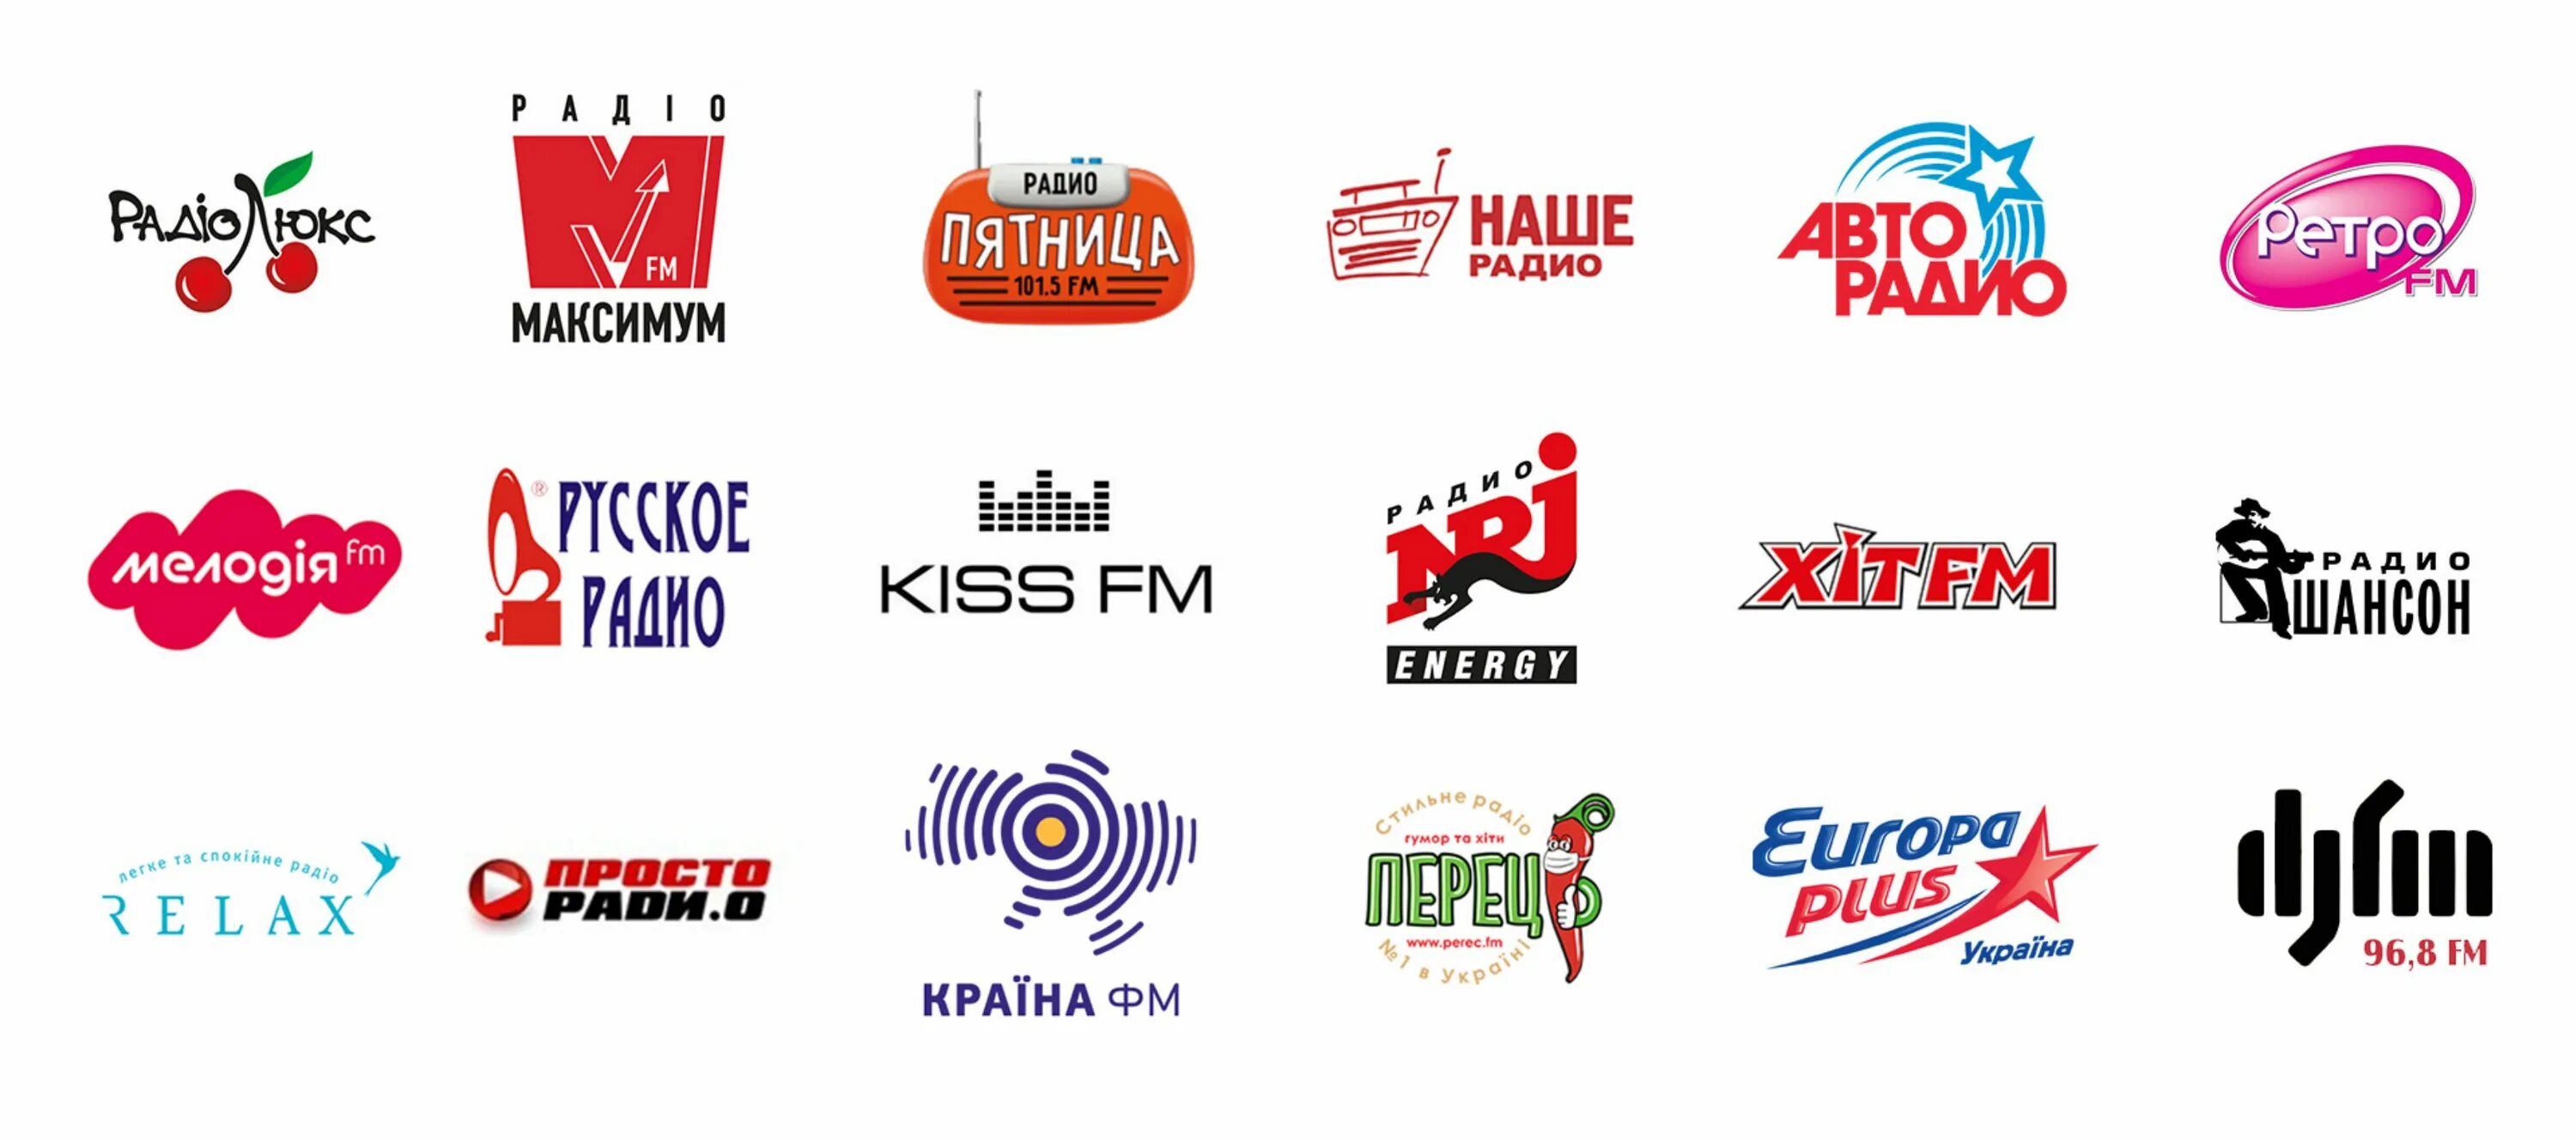 Хит фм екатеринбург. Хит ФМ. Логотип радио хит ФМ. Рекламные компании на радиостанциях. Логотип украинского радио.